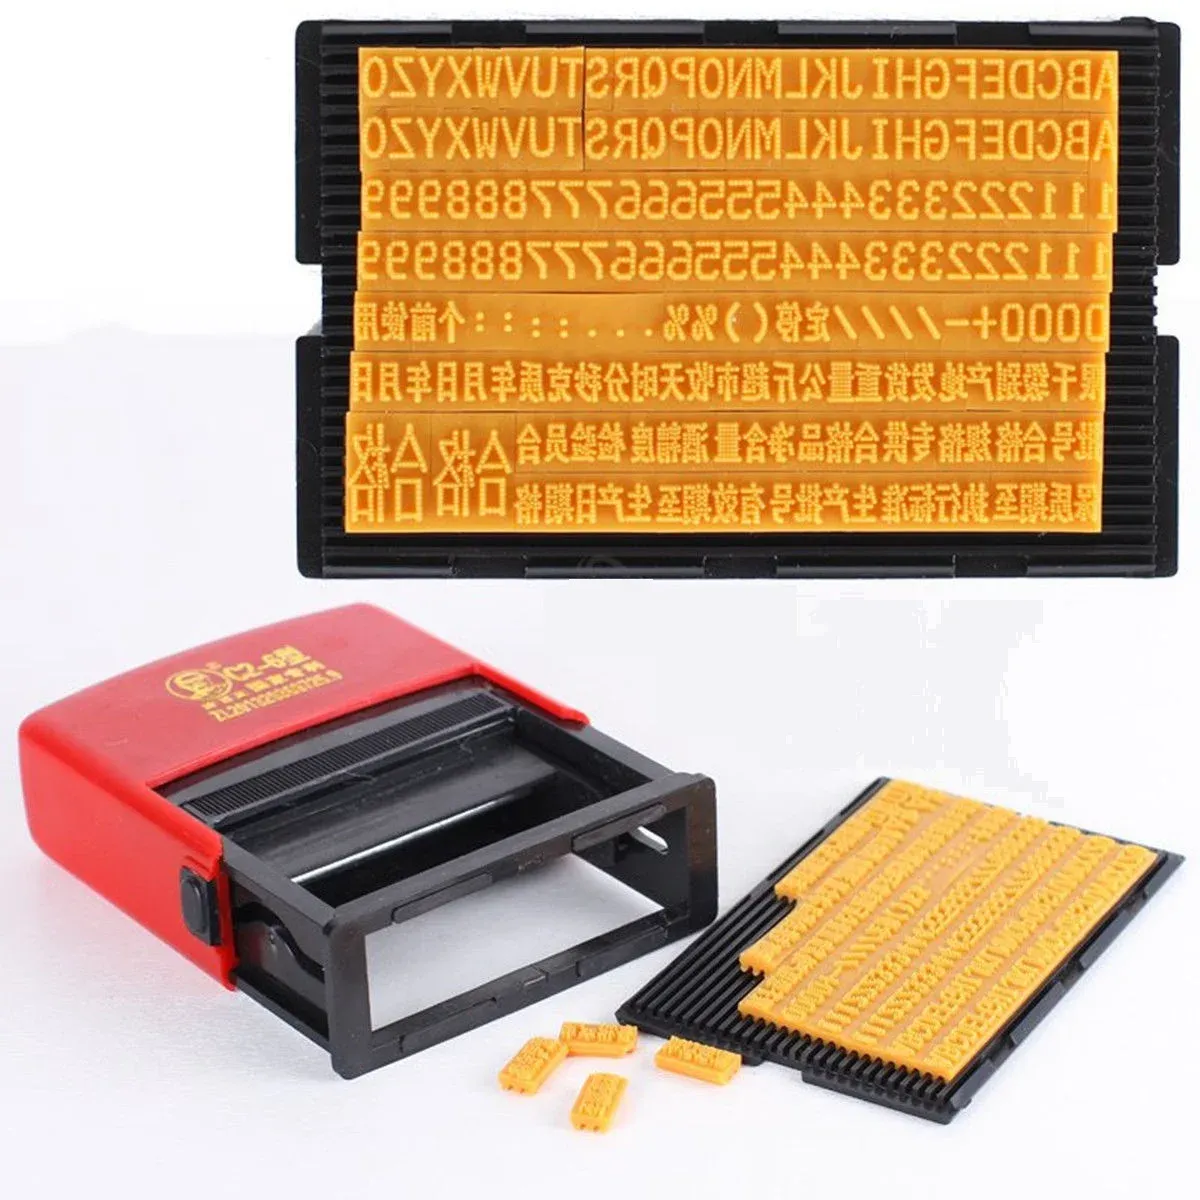 Stampanti manuale di codifica portatile da parte della codifica portatile Stampante Stampante per la data di inchiostro per la produzione di carta in metallo sacchetto di plastica per alimenti.